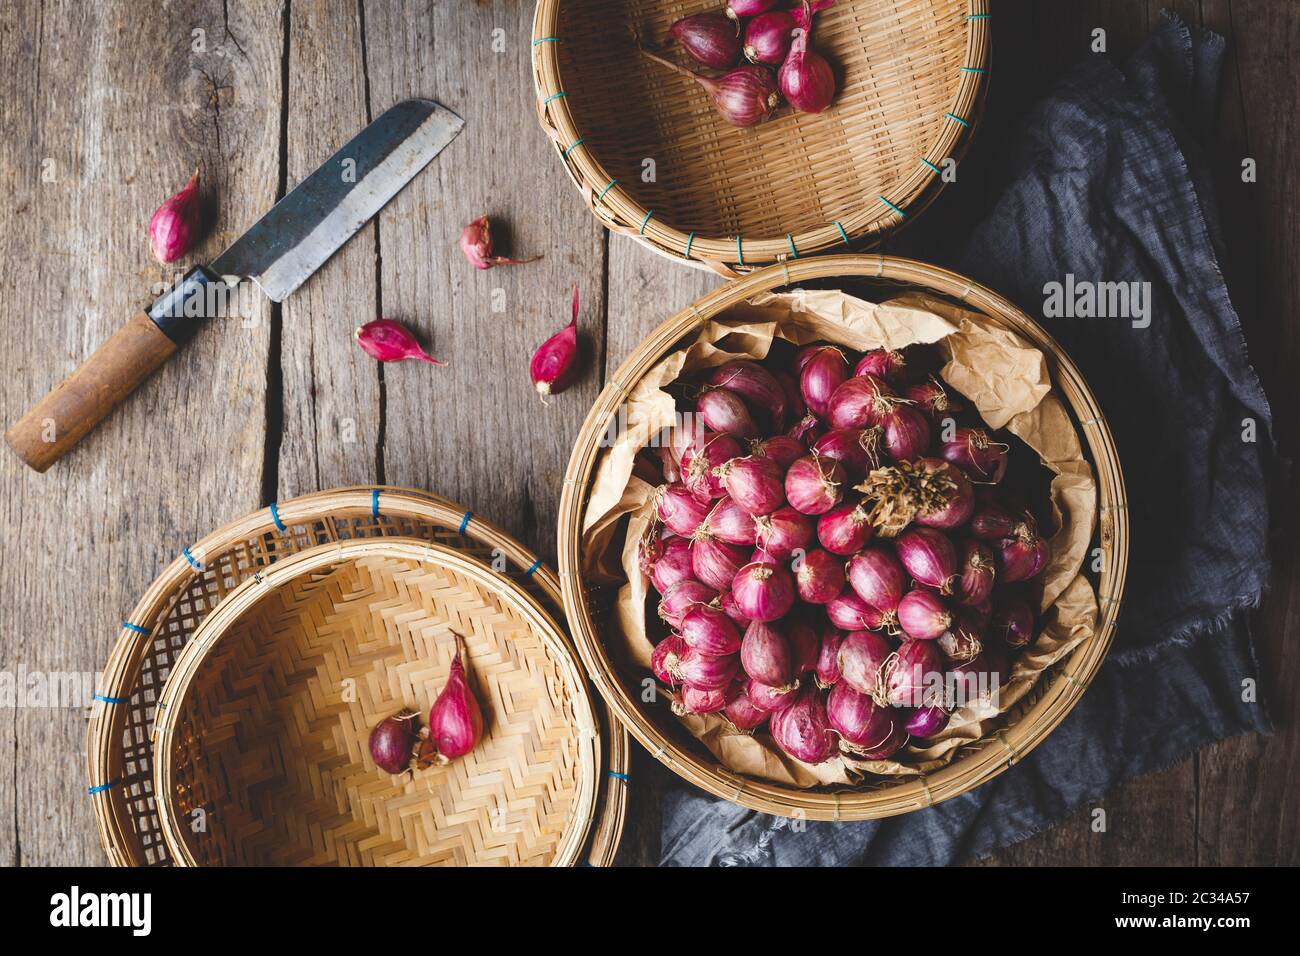 Échalote fraîche - oignons rouges sur le vieux bois Banque D'Images